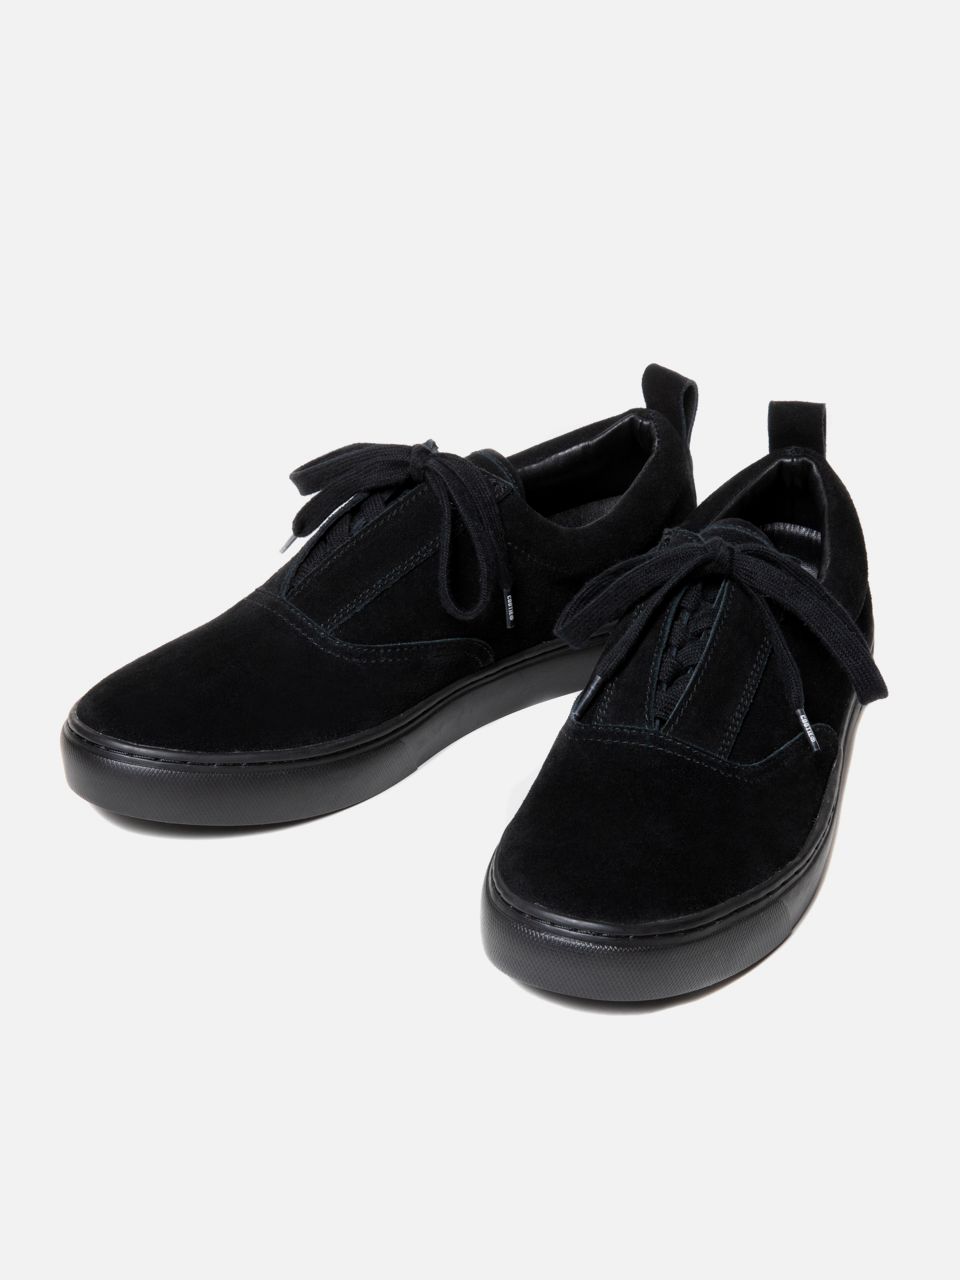 COOTIE / Raza Lace Up Shoes  Black×Black     HACHIMARU